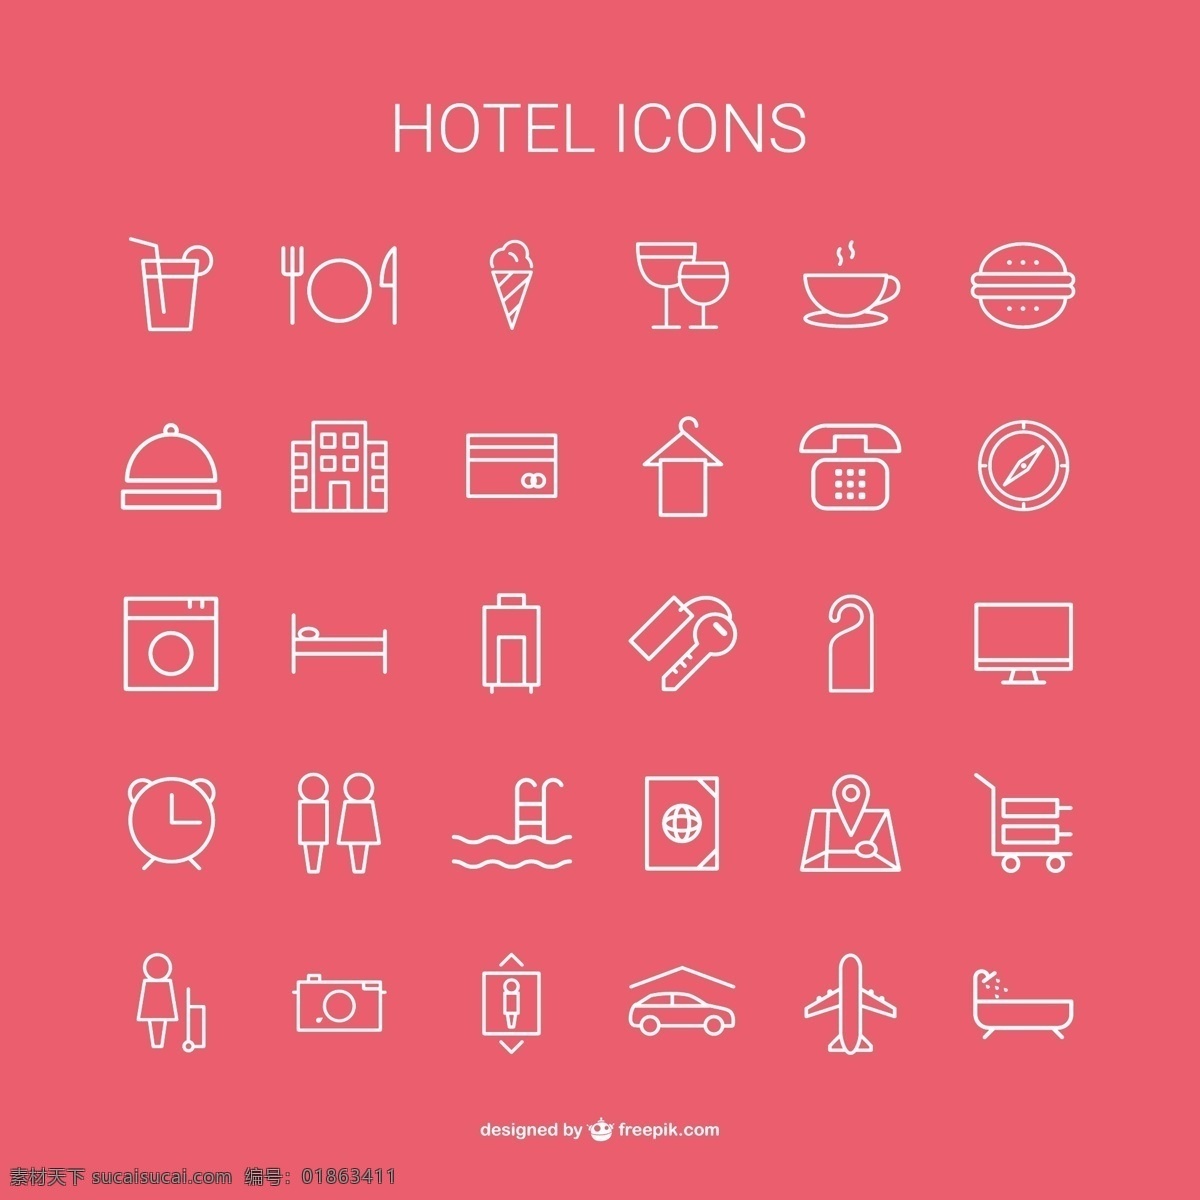 酒店的图标集 图标 酒店 图标集 包 设置 图标包 收藏 酒店的图标 粉色